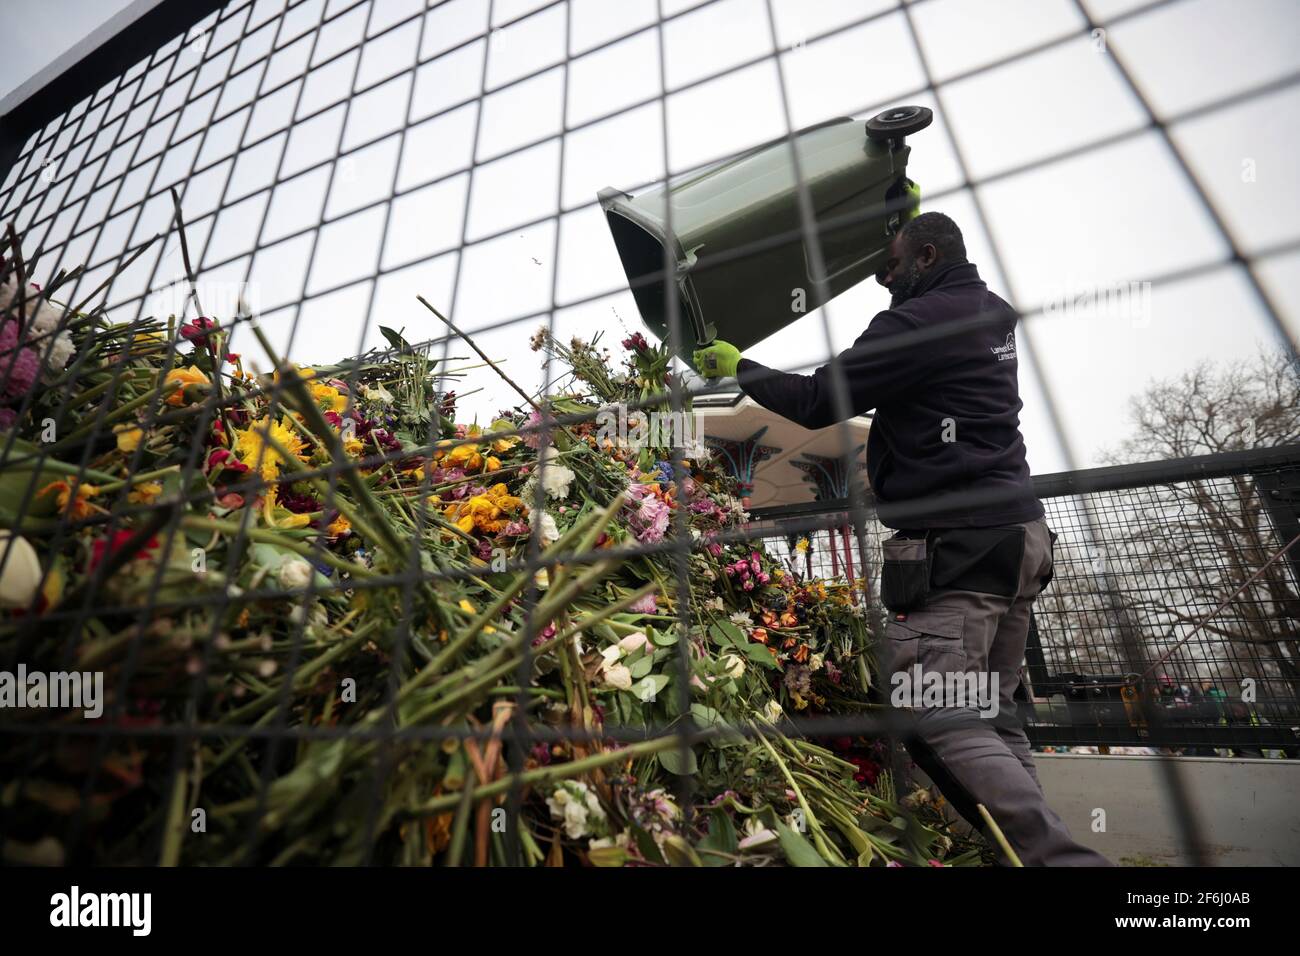 Un employé du conseil remet des hommages floraux à un mémorial de fortune pour la Sarah Everard assassinée du kiosque à musique Clapham Common Bandstand à Londres, en Grande-Bretagne, le 1er avril 2021. REUTERS/Hannah McKay Banque D'Images